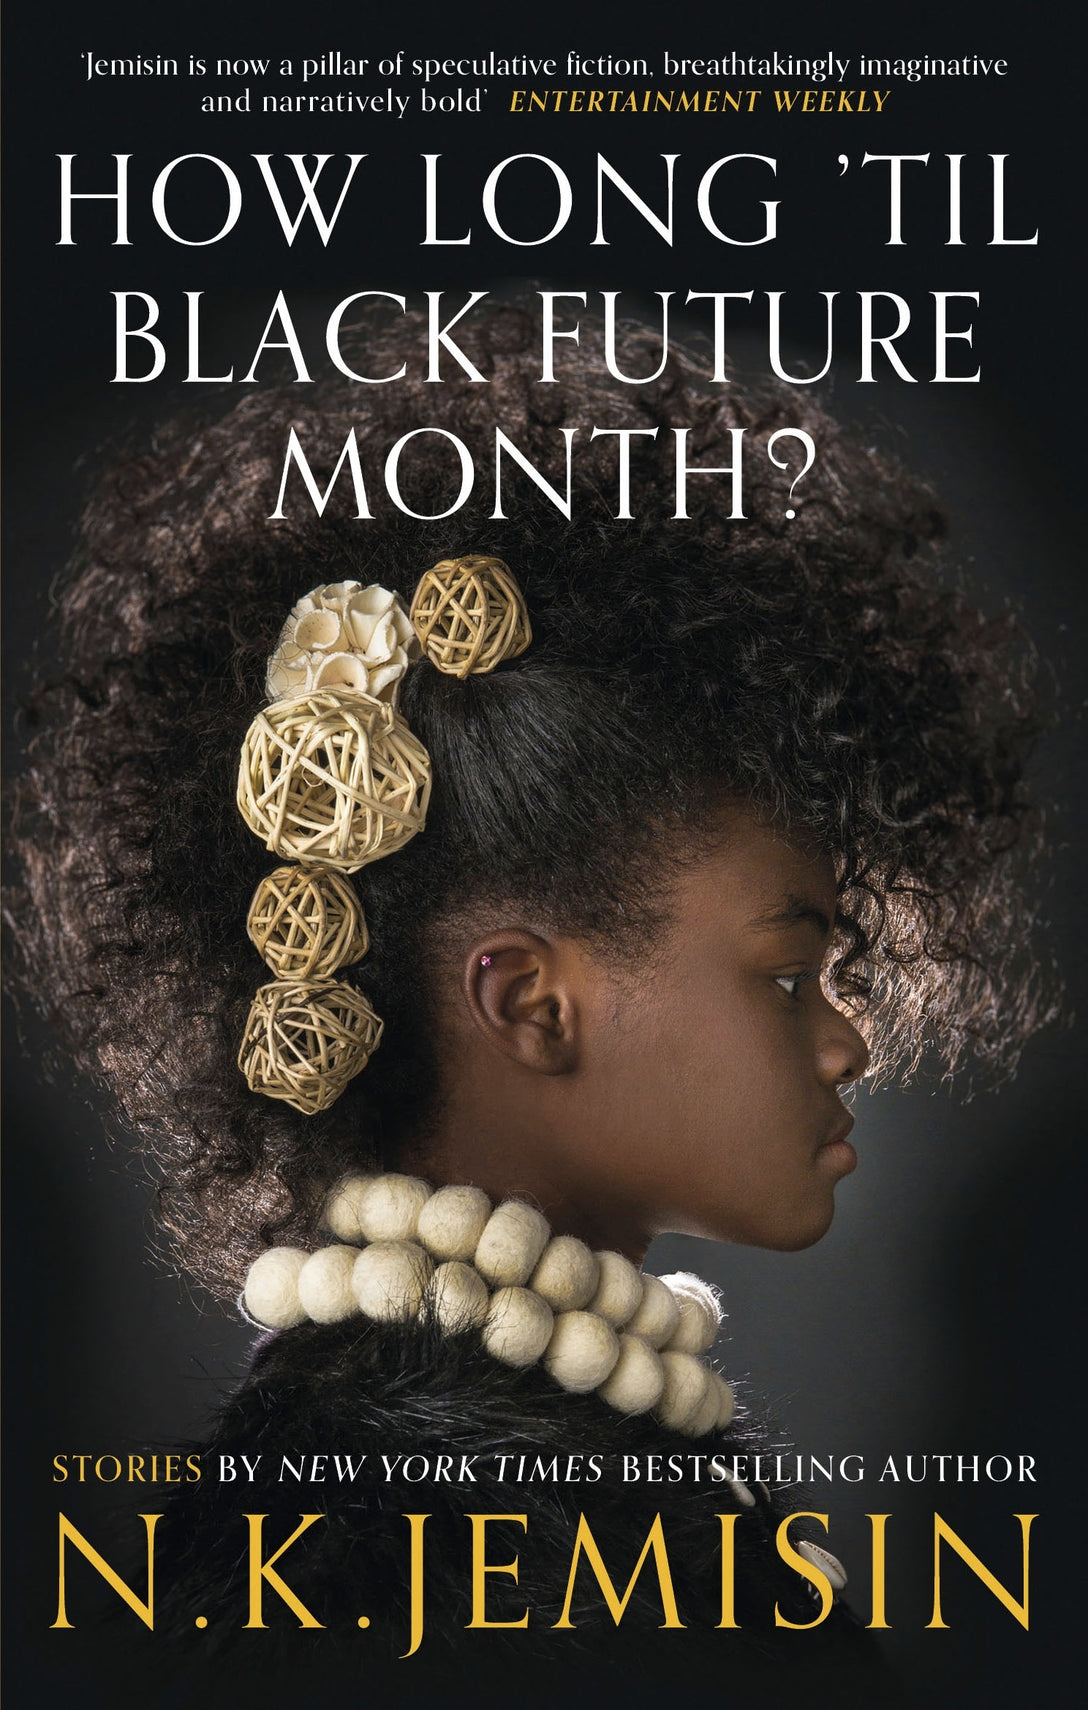 How Long 'til Black Future Month? by N. K. Jemisin